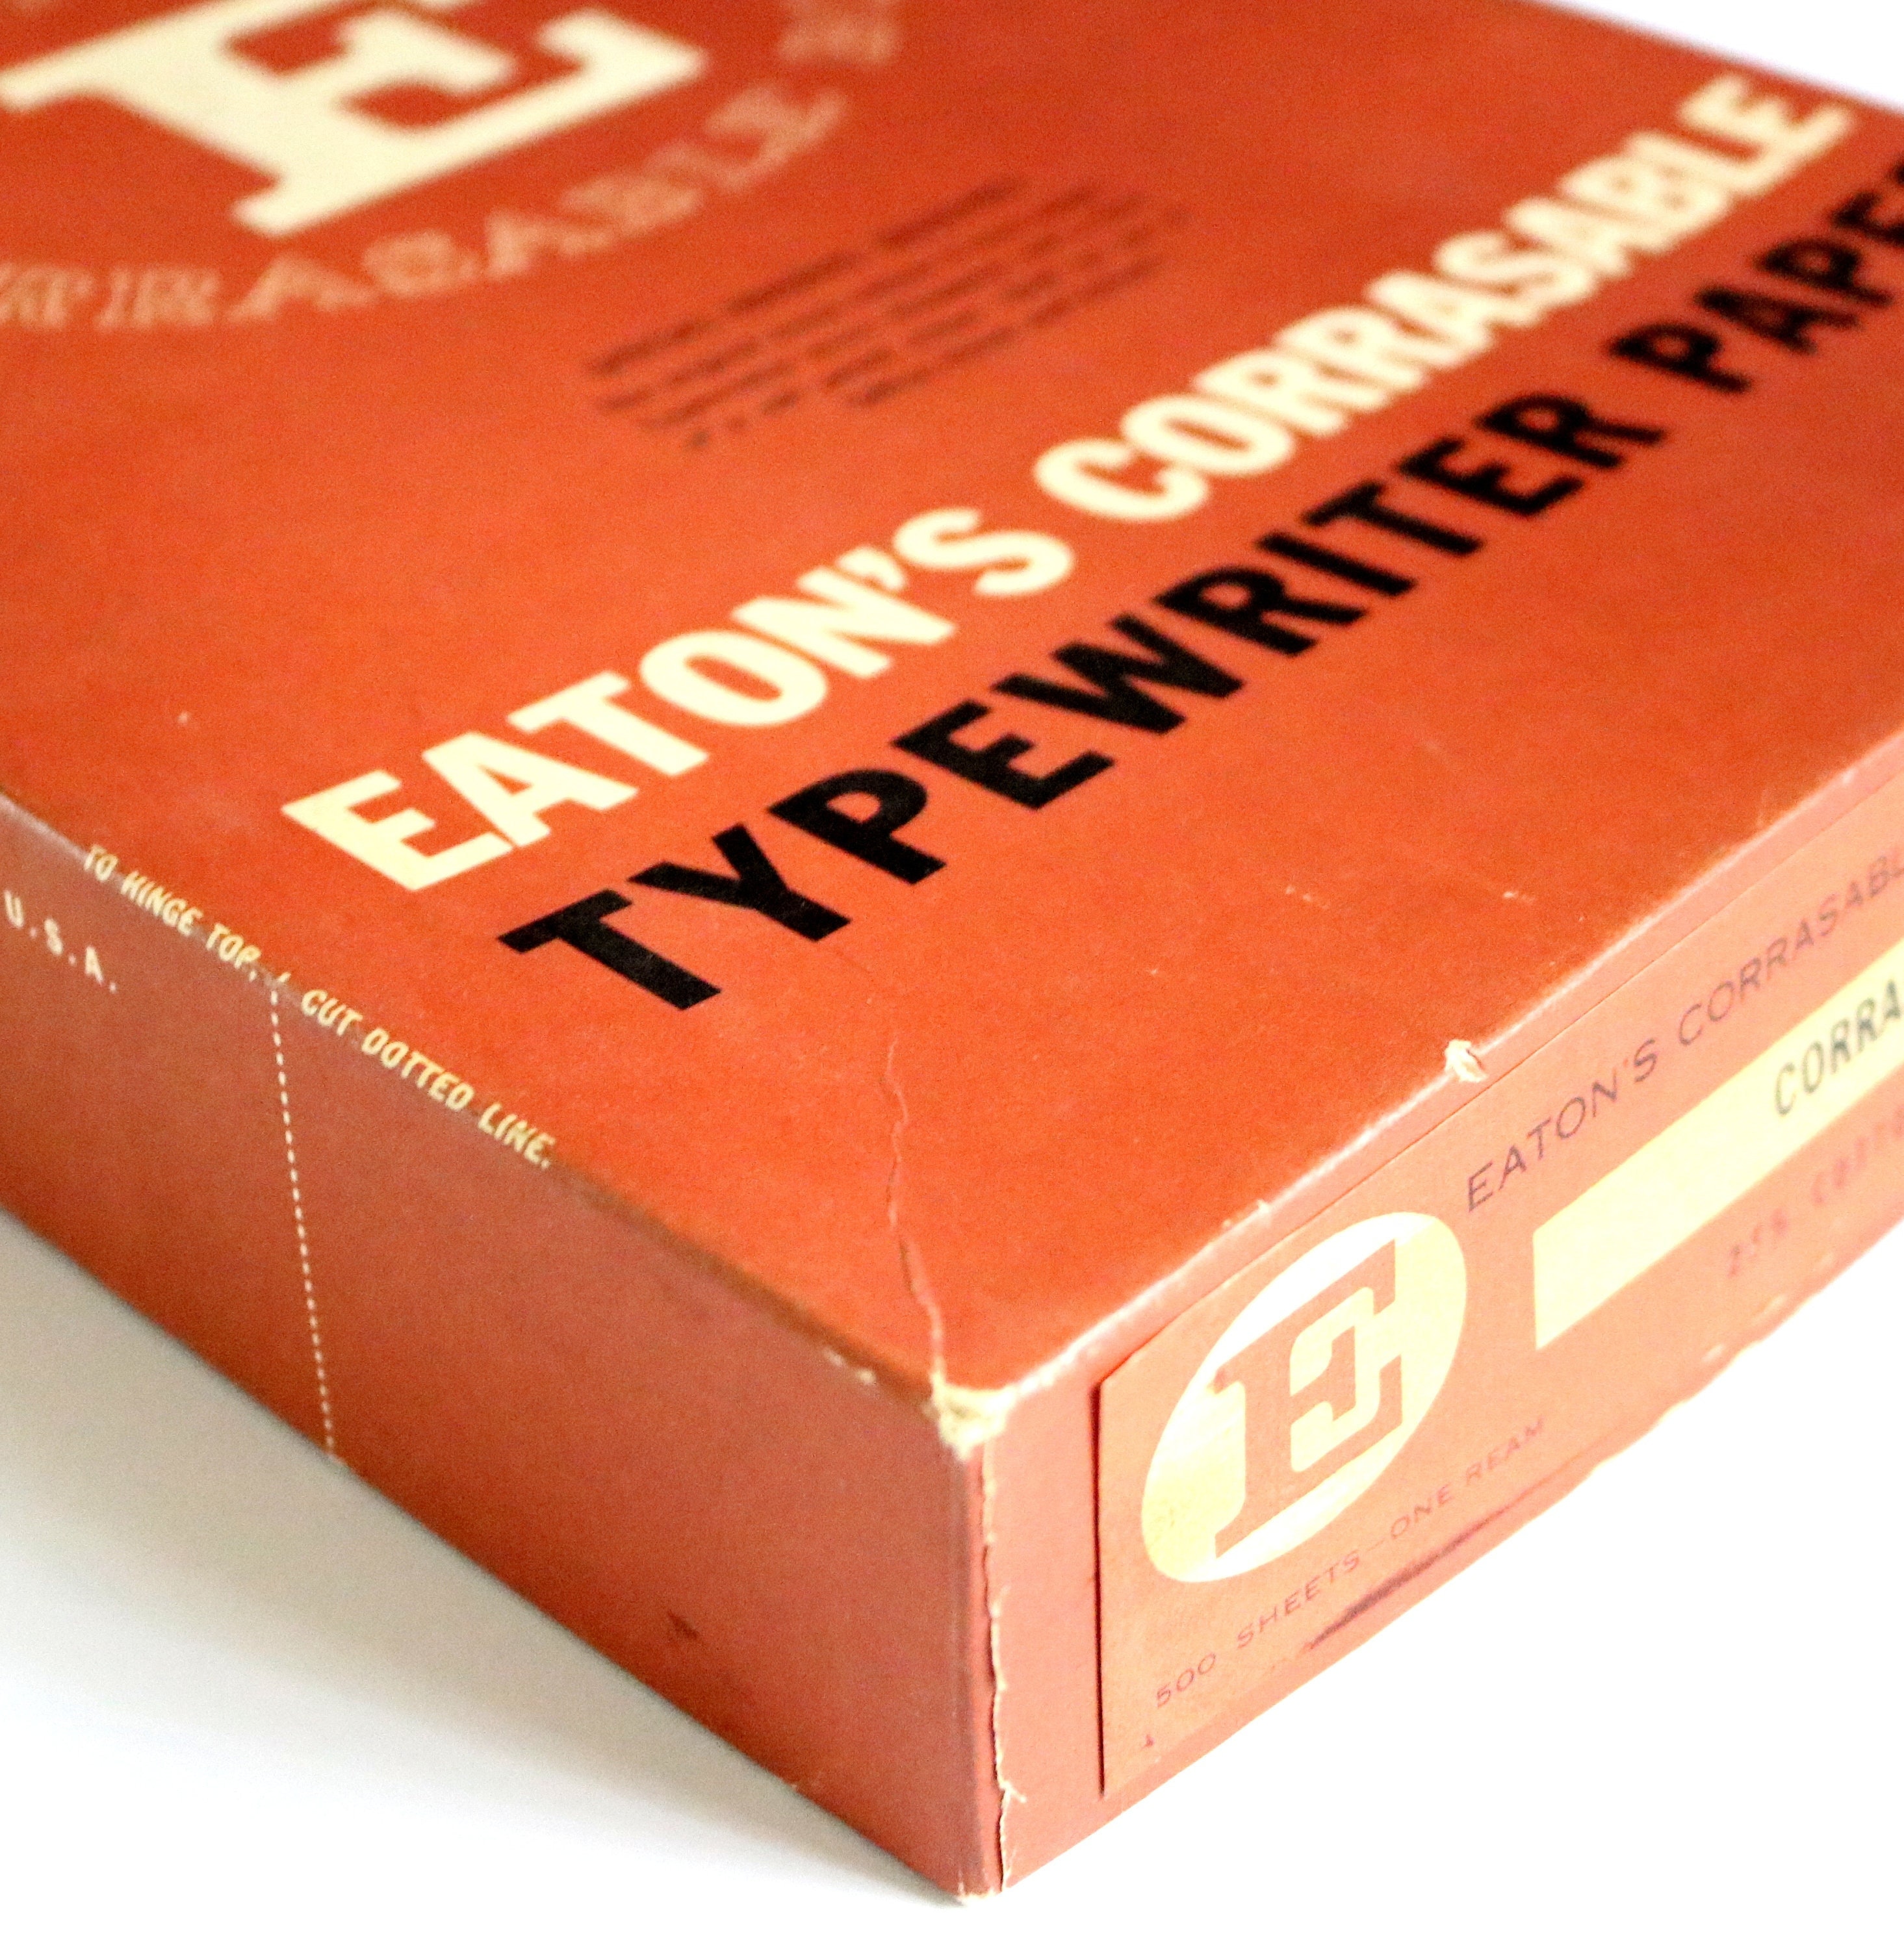 Various eras of Eaton typewriter paper. That company put effort